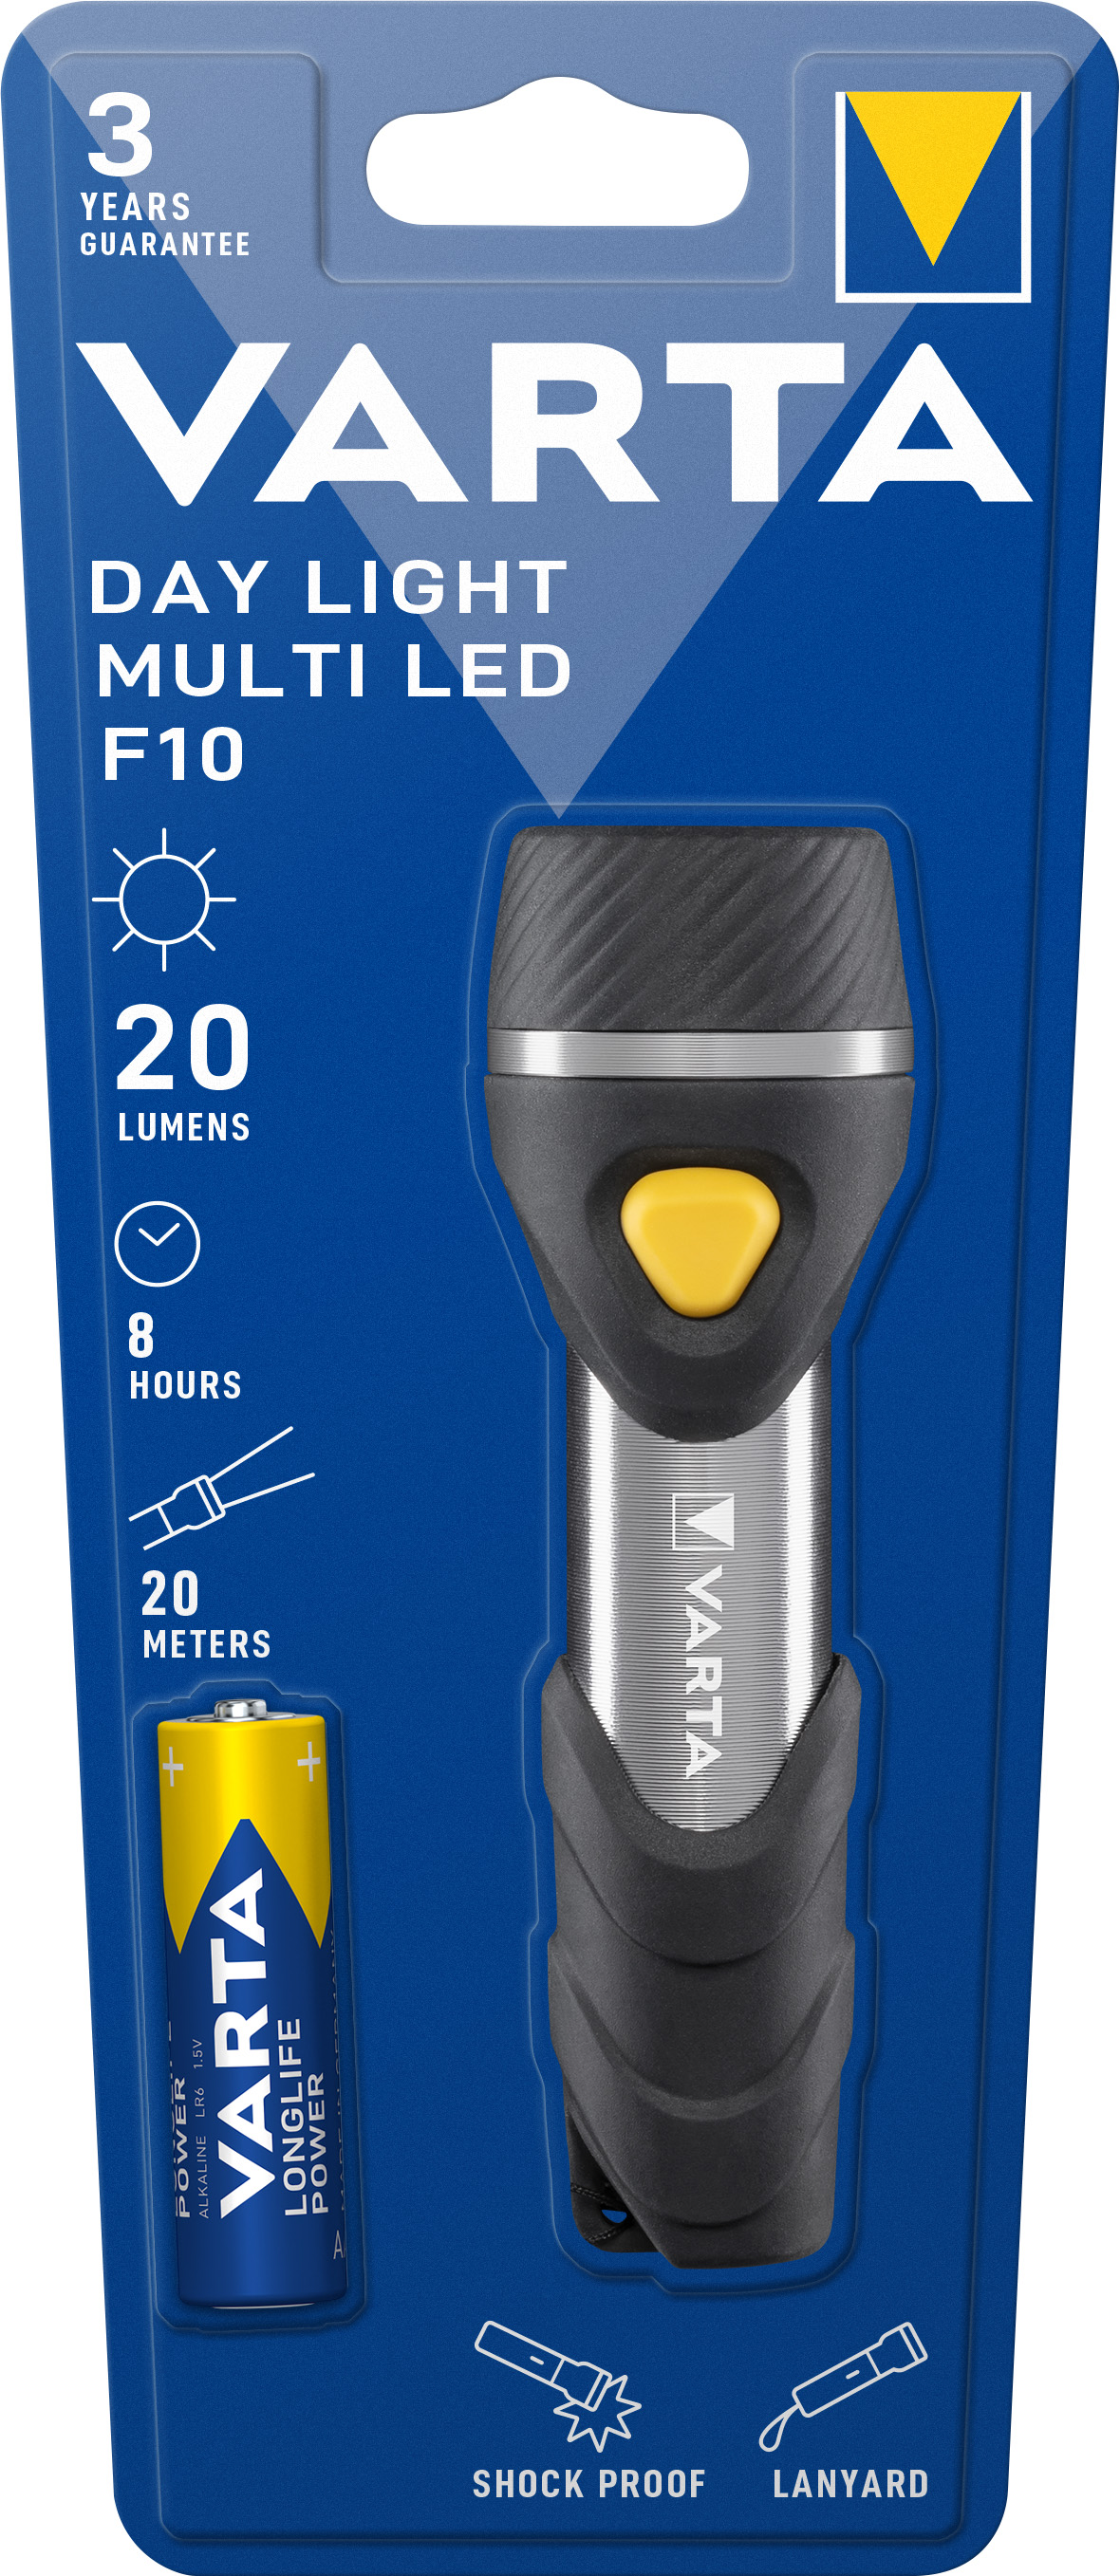 Varta LED Taschenlampe Day Light, Multi LED F10 20lm, inkl. 1x Batterie Alkaline AAA, Retail Blister